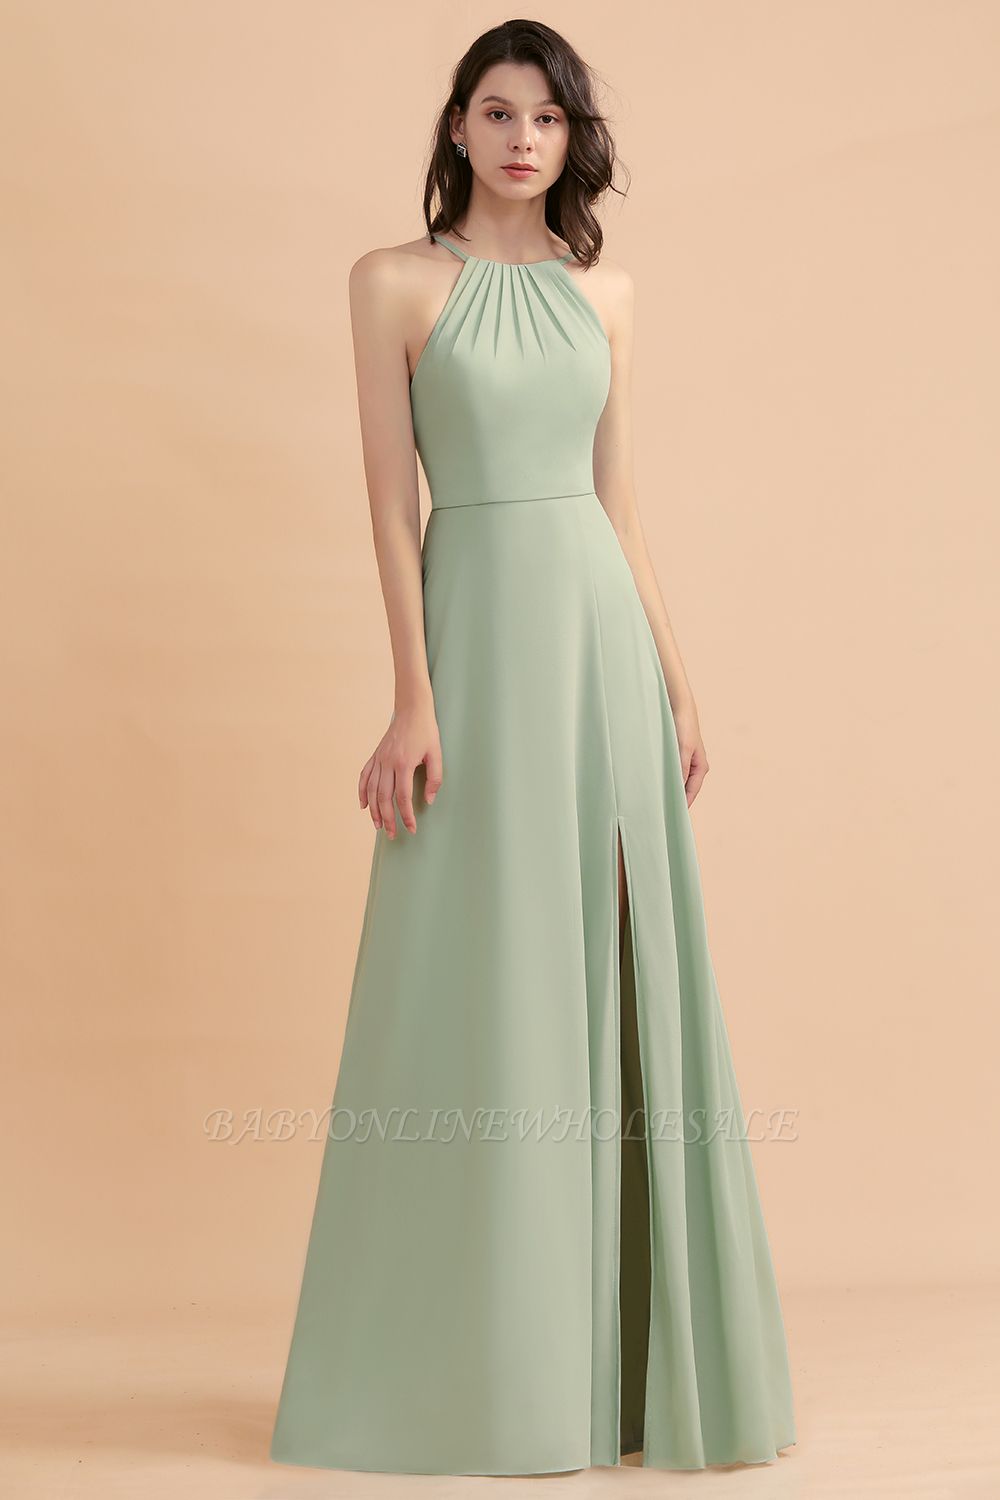 Halter Mint Green Aline Wedding Guest Dress Sleeveles Long Banquet Dress with Side Slit